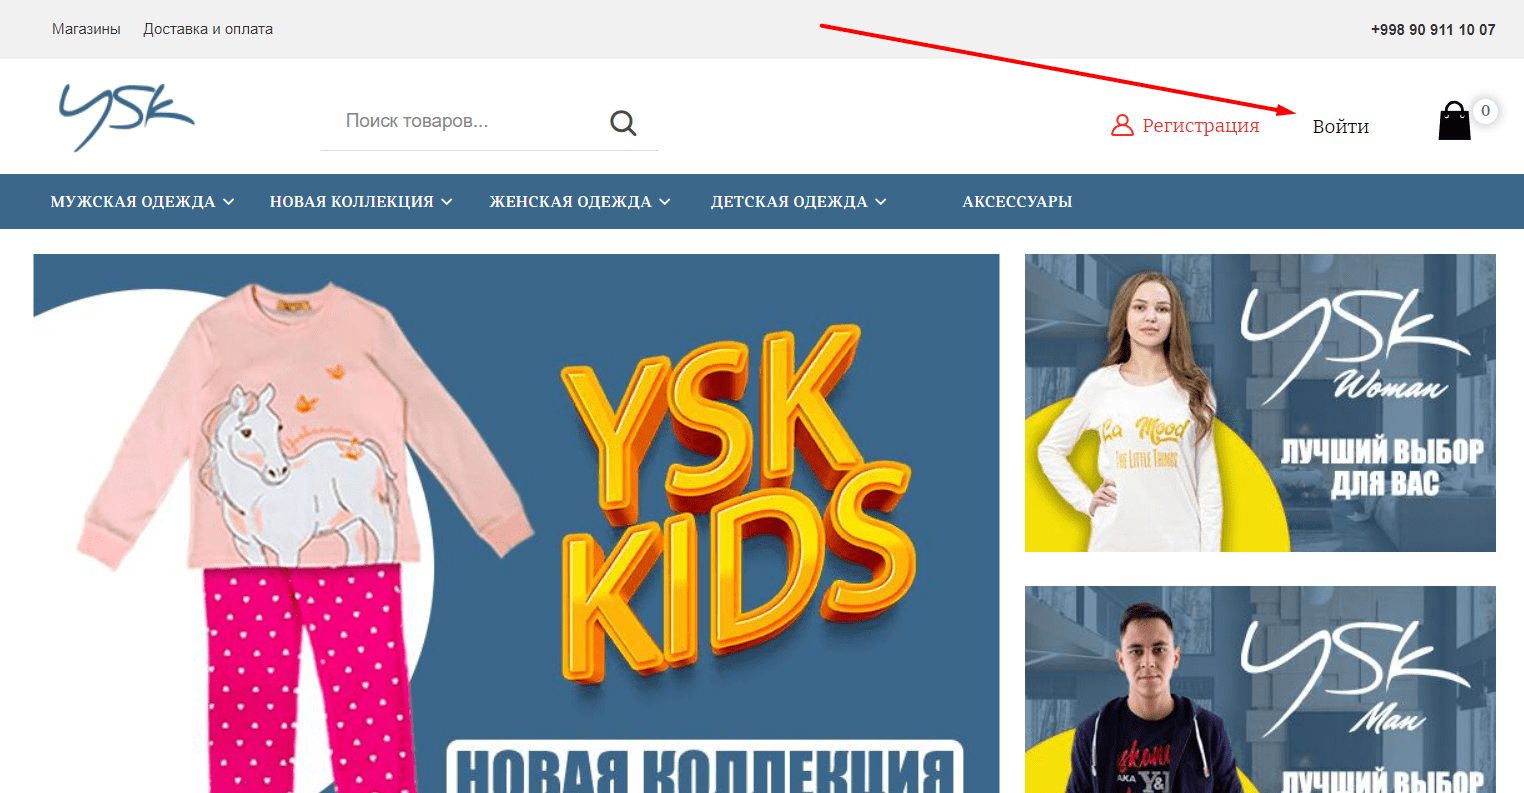 YSK - официальный сайт